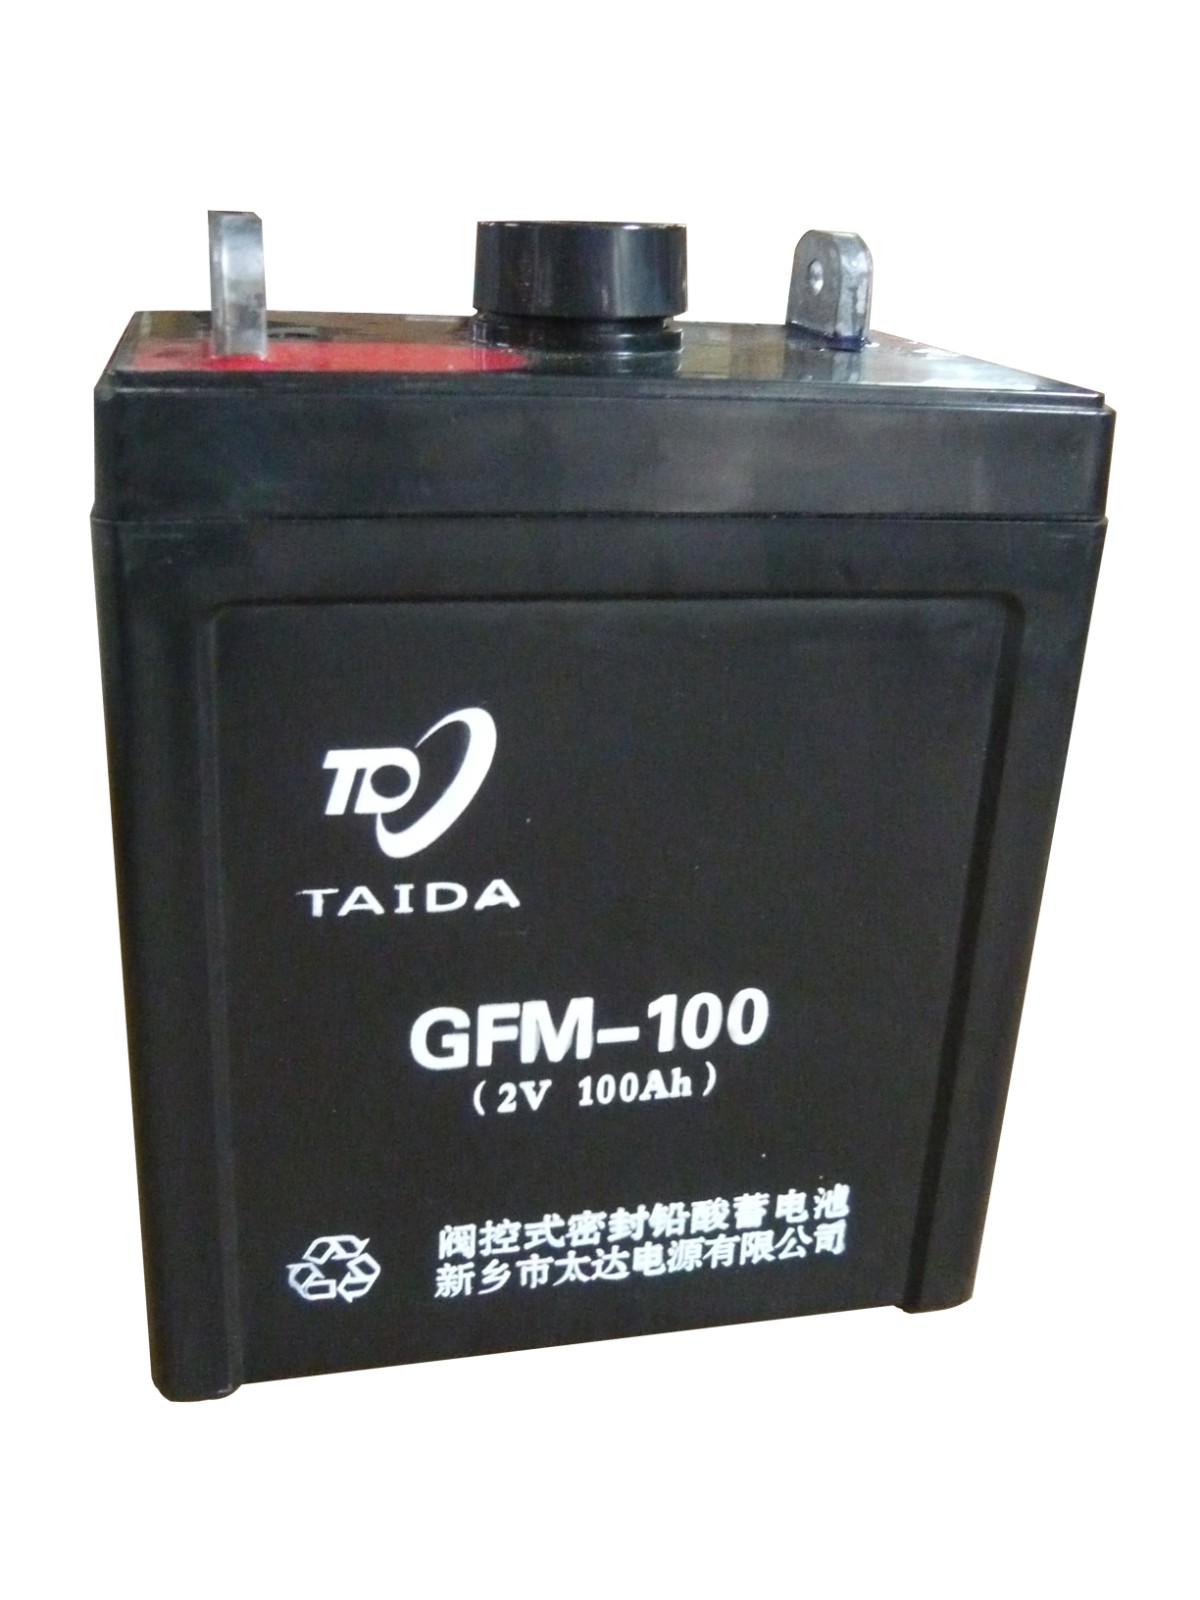 阀控式密封铅酸蓄电池 型号GFM-100 2V100Ah(10HR)